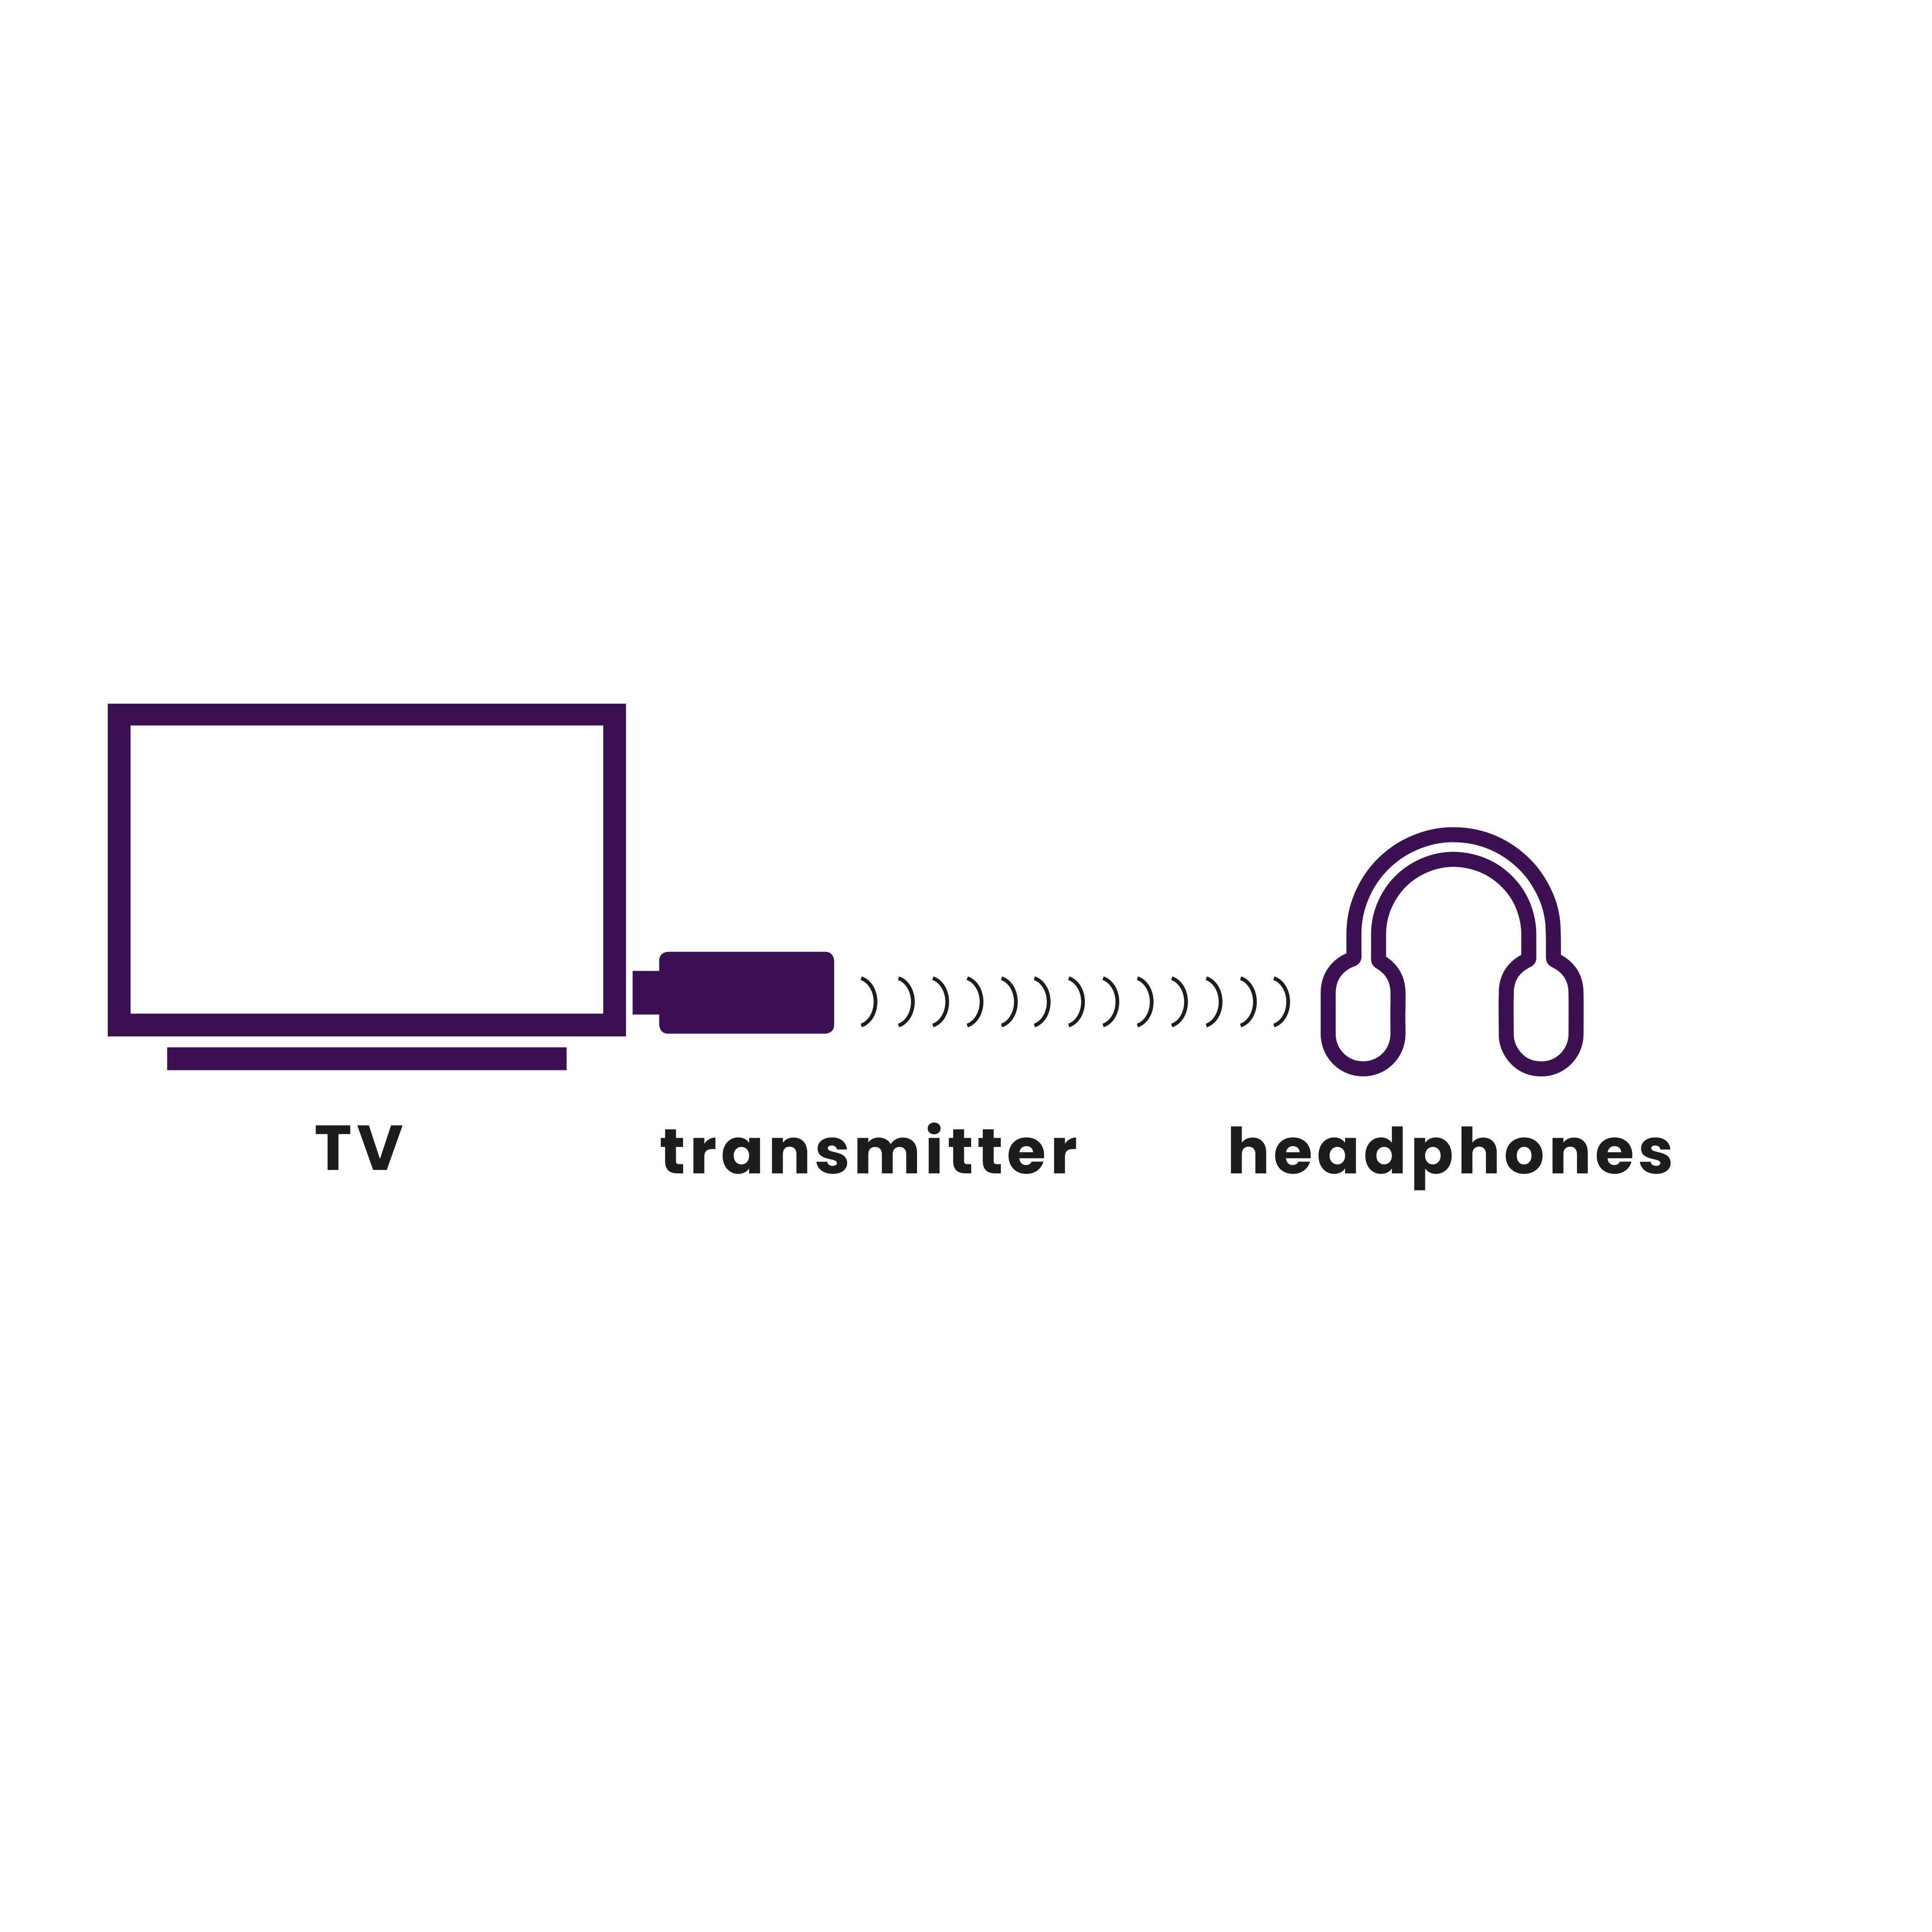 Marmitek Audio/Video Zenders Dr BoomBoom 50 Bluetooth